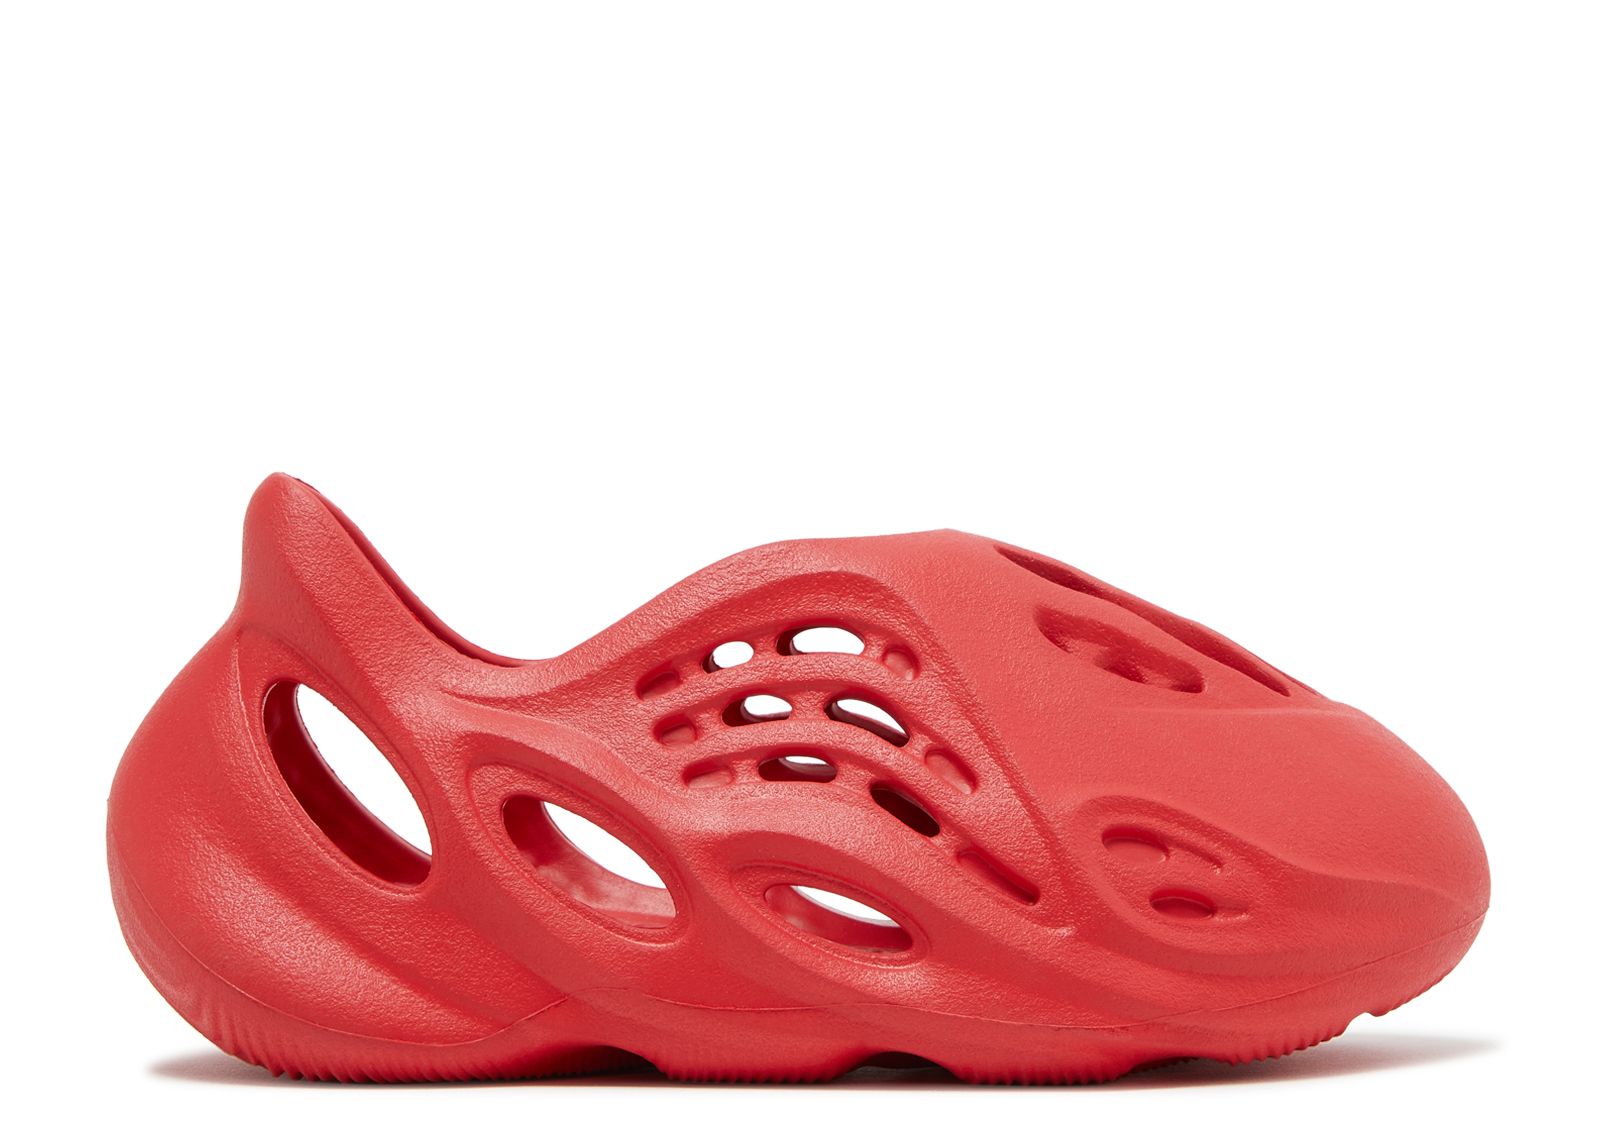 Кроссовки adidas Yeezy Foam Runner Kids 'Vermilion', красный кроссовки adidas yeezy foam runner kids onyx серый